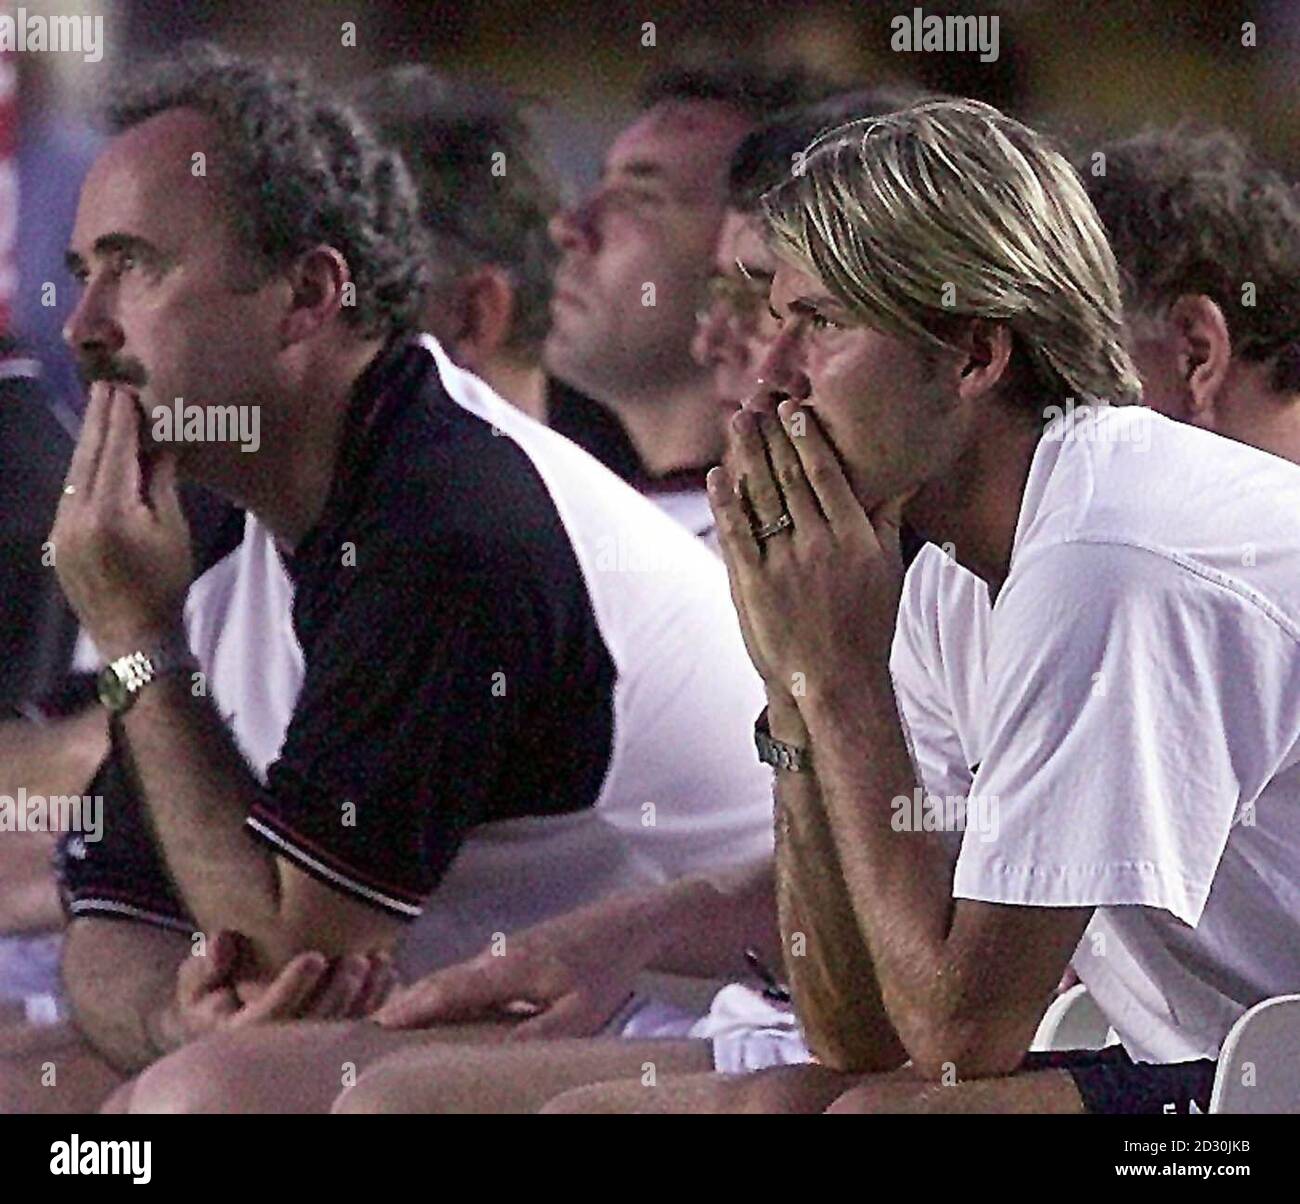 Cette image ne peut être utilisée que dans le contexte d'une fonction éditoriale. David Beckham de Manchester United tient sa tête dans ses mains alors que son côté s'est écrasé 3-1 contre Vasco de Gamma, lors de leur match de football du championnat du monde de la FIFA du groupe B. *.. Au stade Maracana à Rio de Janeiro, Brésil. Banque D'Images